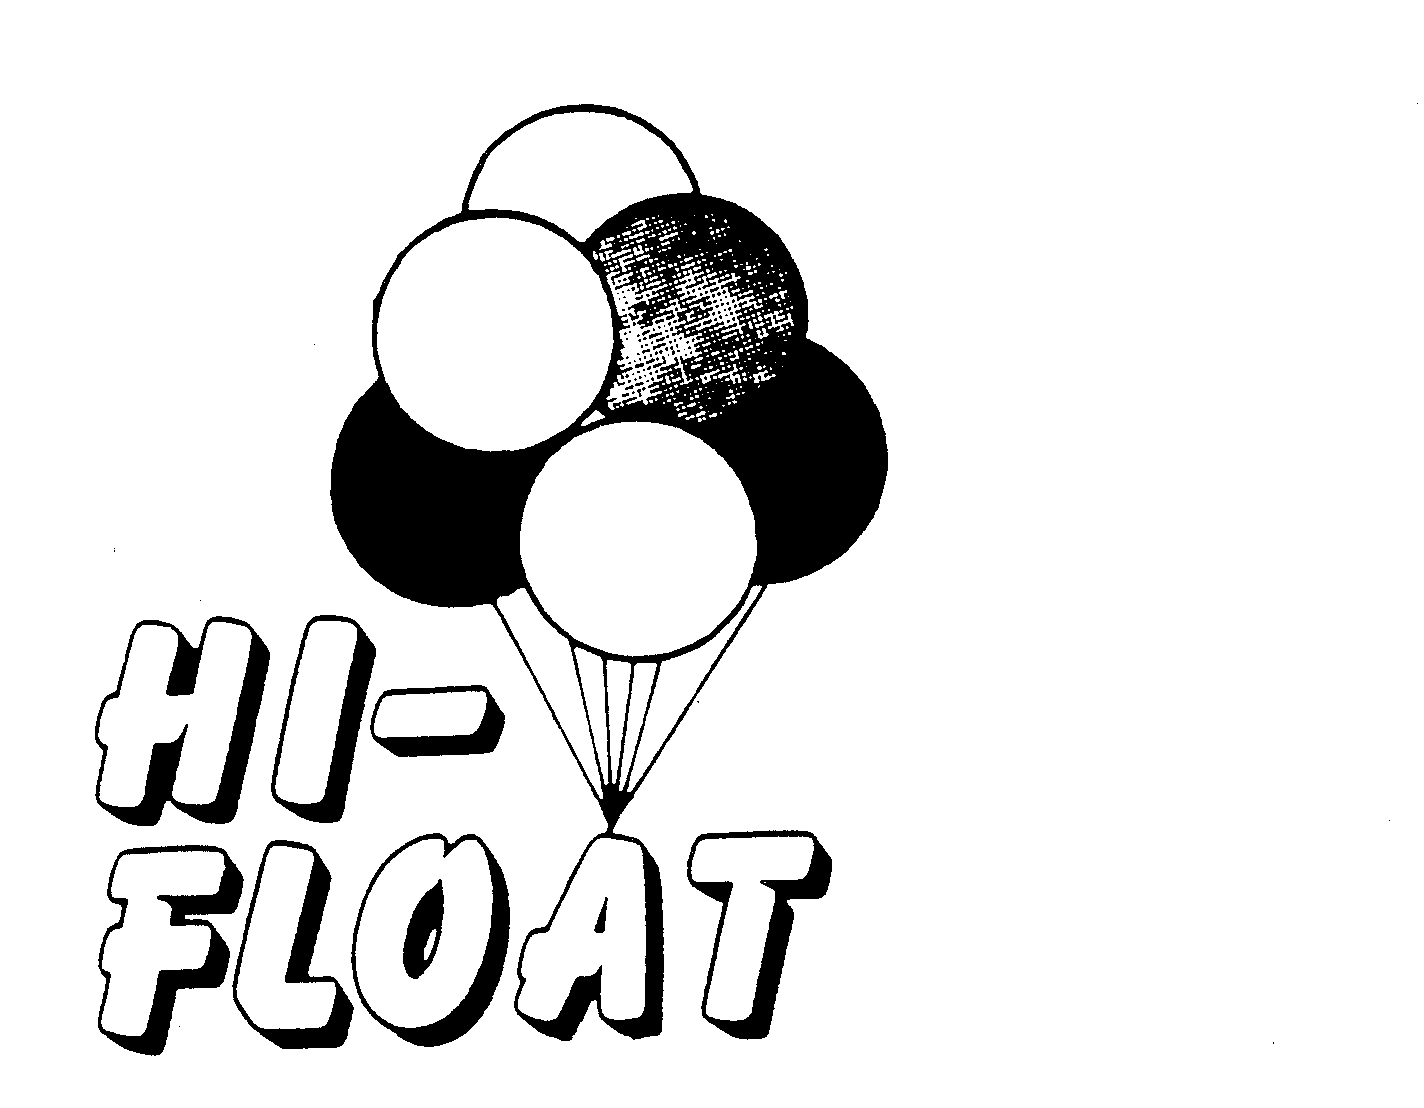 HI-FLOAT